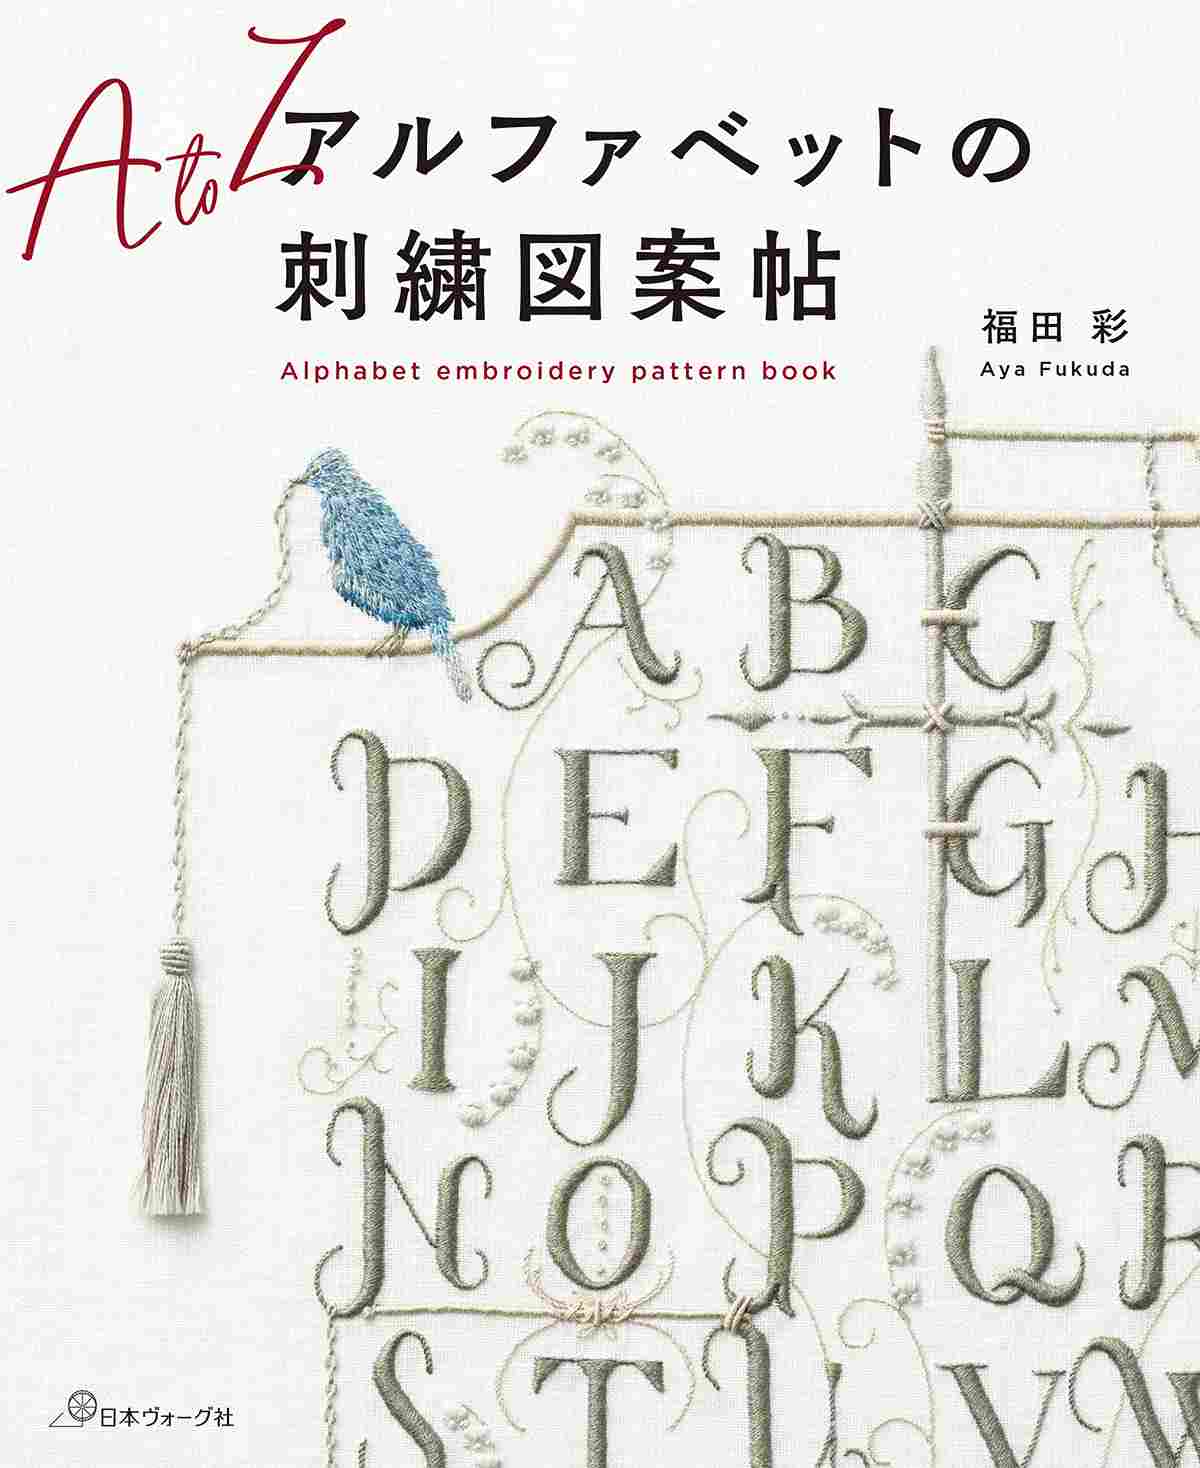 好評発売中「アルファベットの刺繍図案帖」 | 日本ヴォーグ社